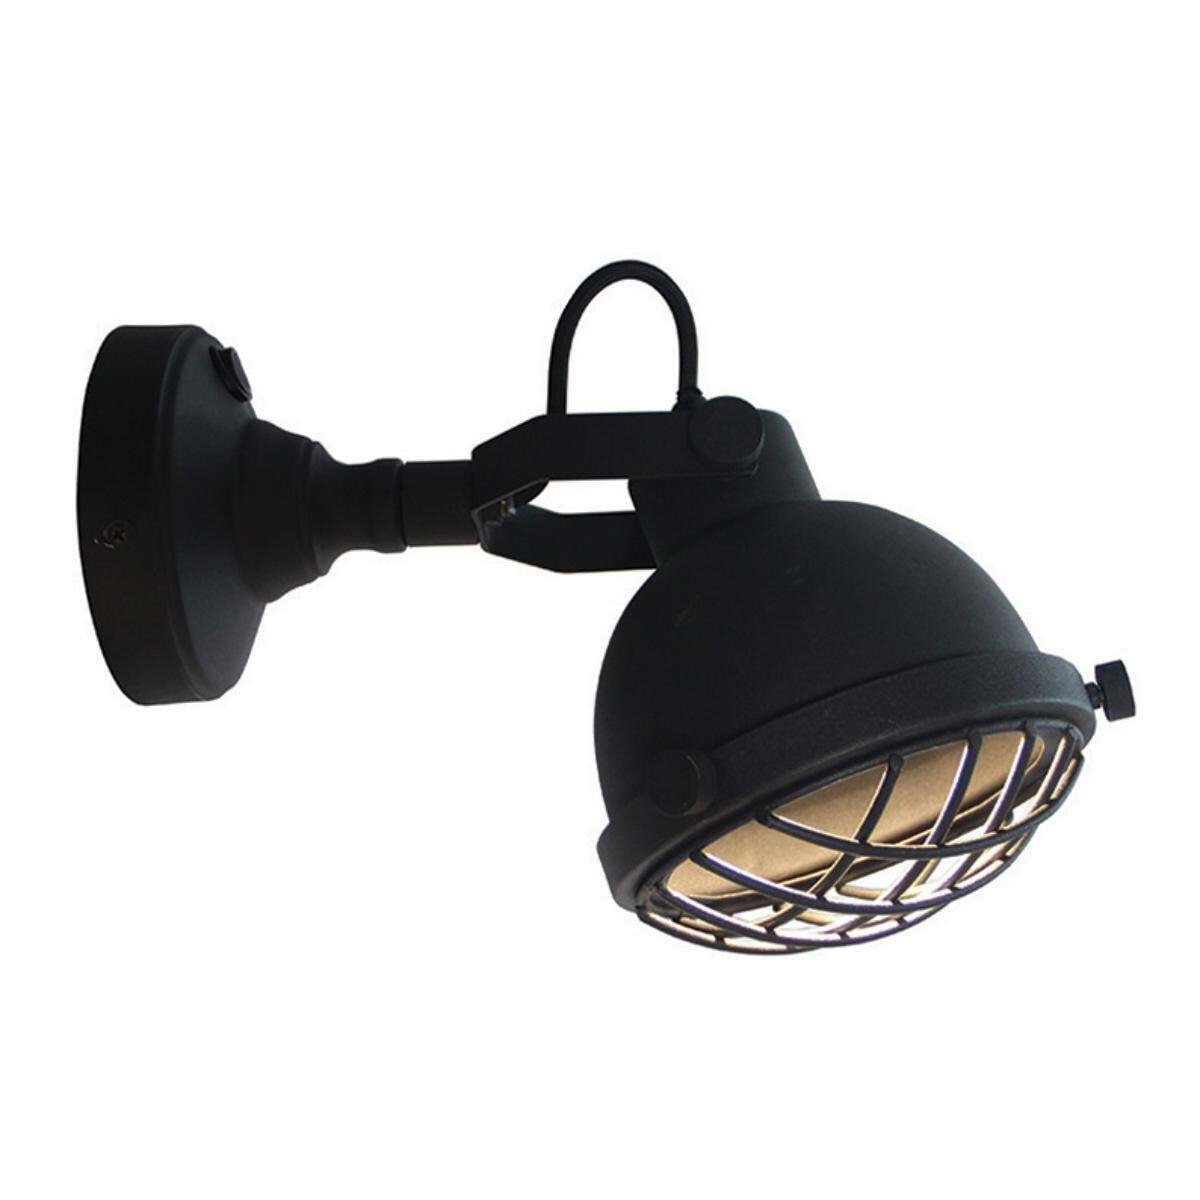 LABEL51 wandlamp 'Cas' LED, kleur zwart